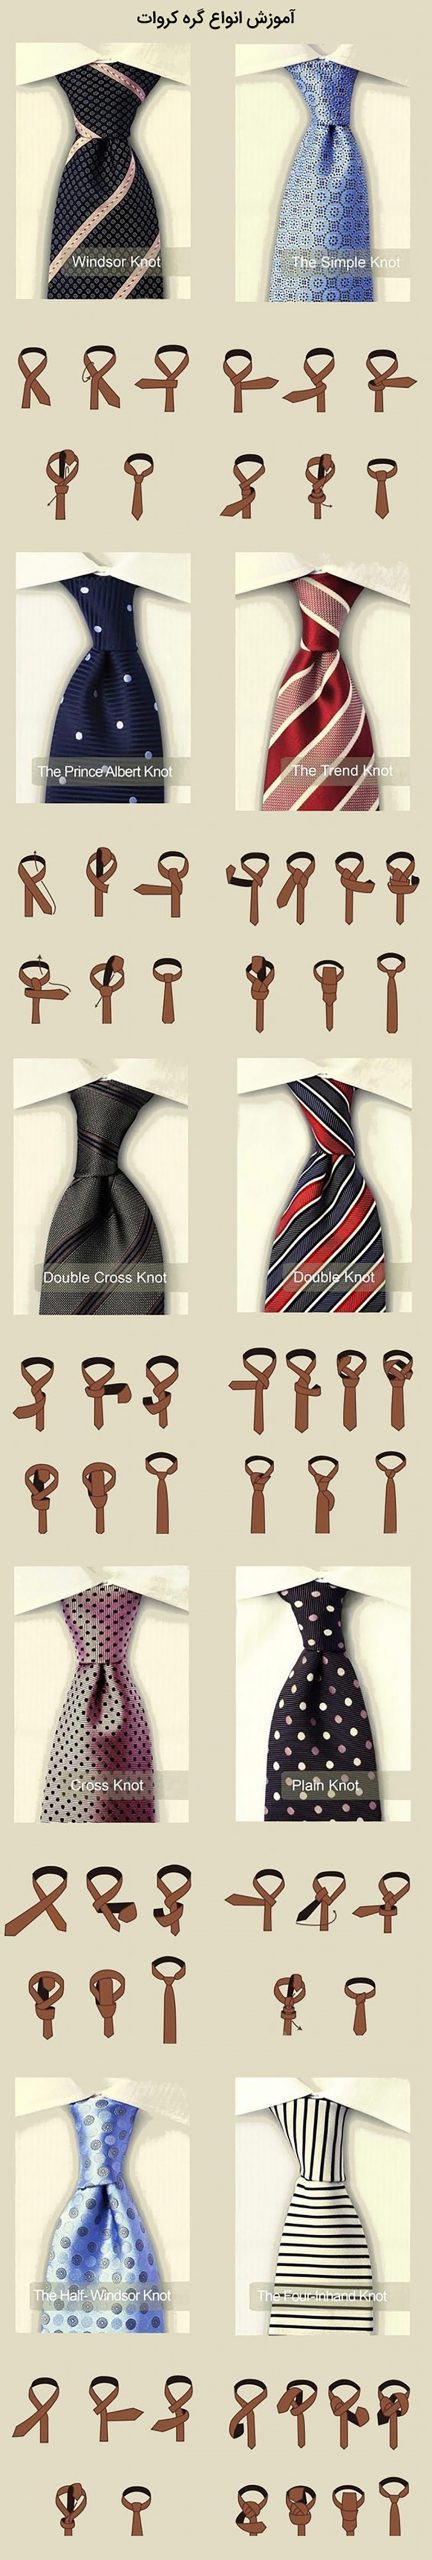 روش های آسان بستن کراوات آقایان 